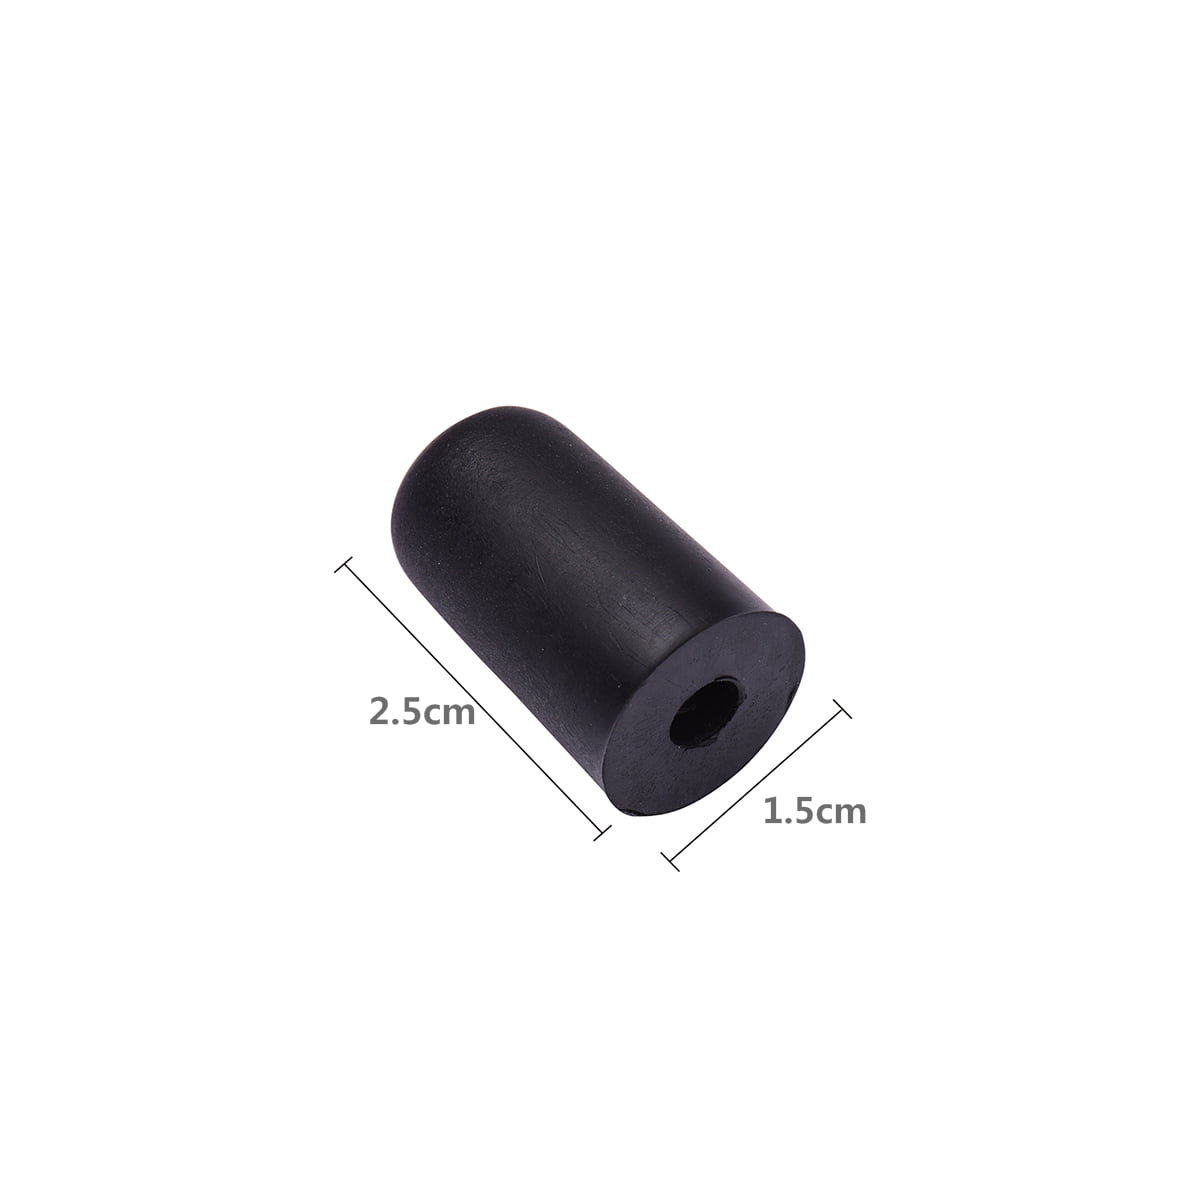 Cello Non-Slip Cap 4Pcs Black Rubber Tip for Cello Endpin Instrument Protector